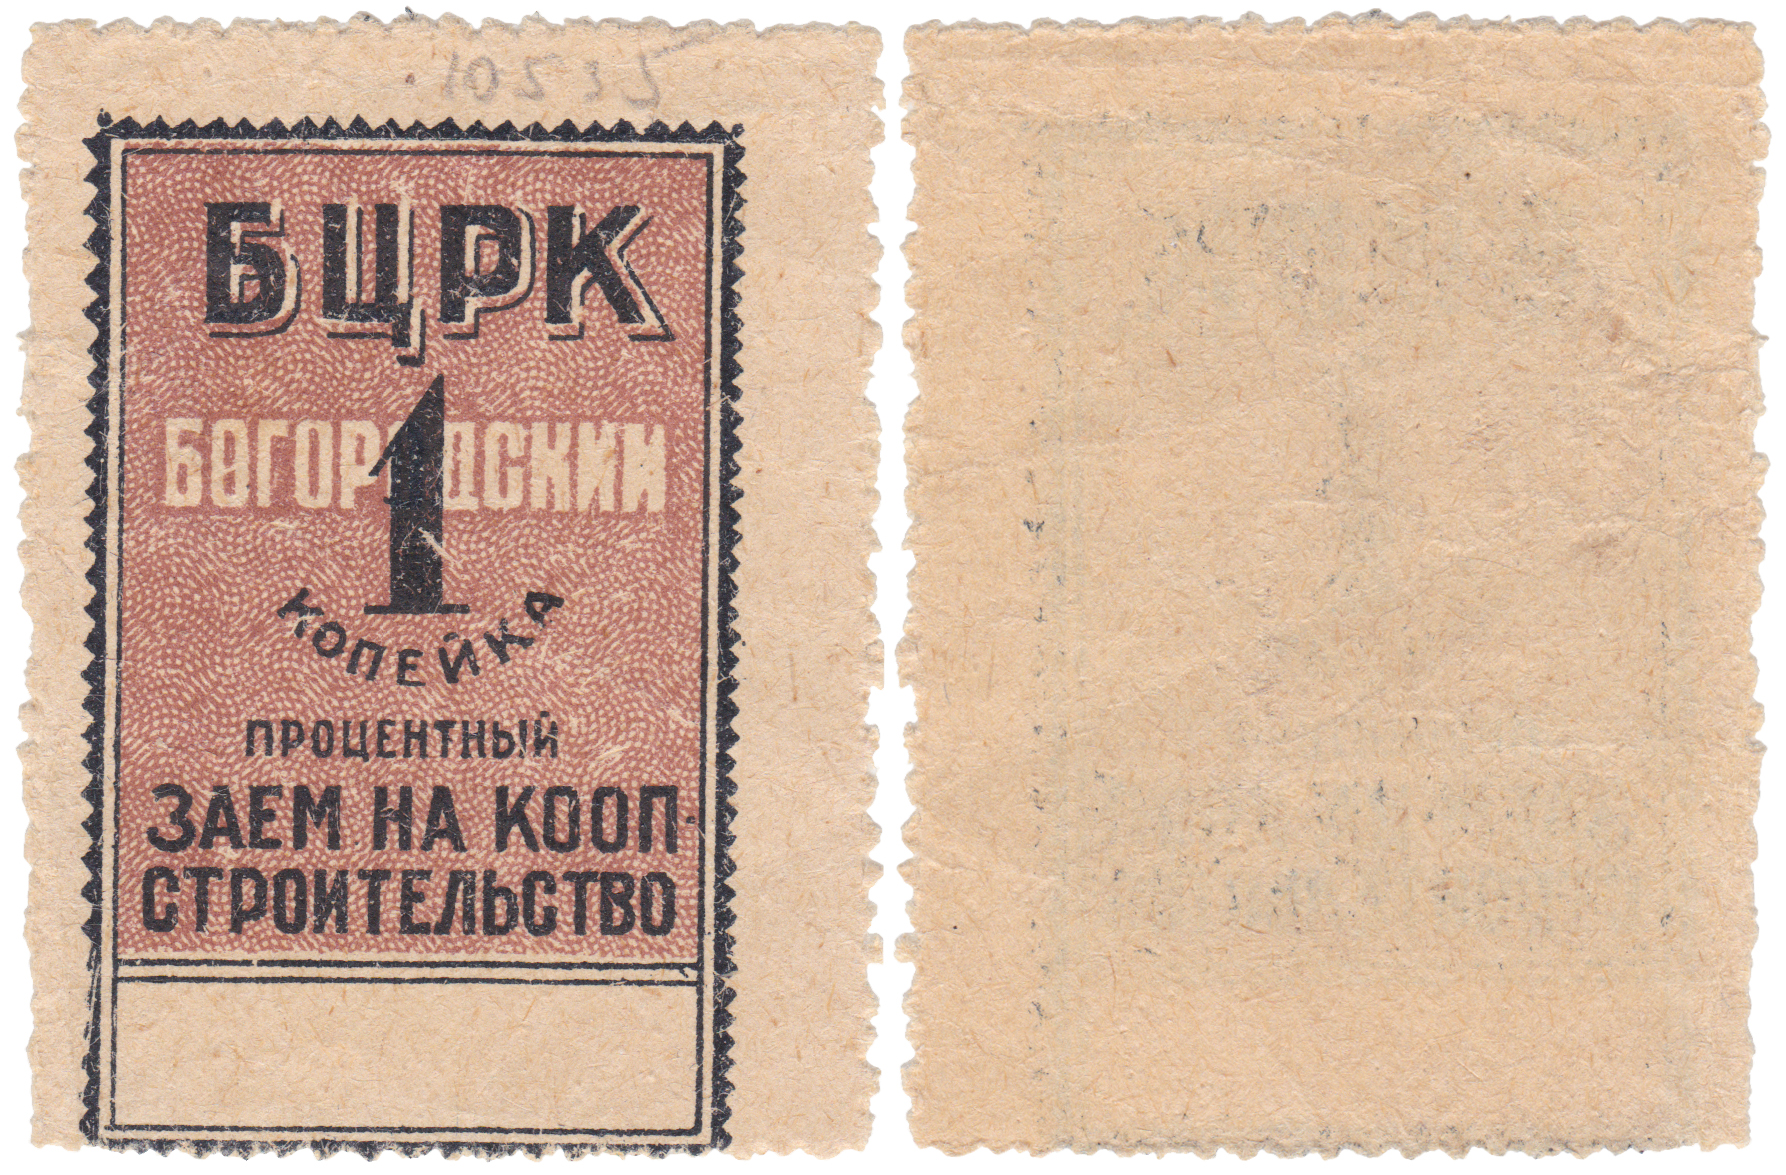 Процентный заем на кооперативное строительство 1 Копейка 1924 год. Богородский Центральный Рабочий Кооператив (БЦРК)